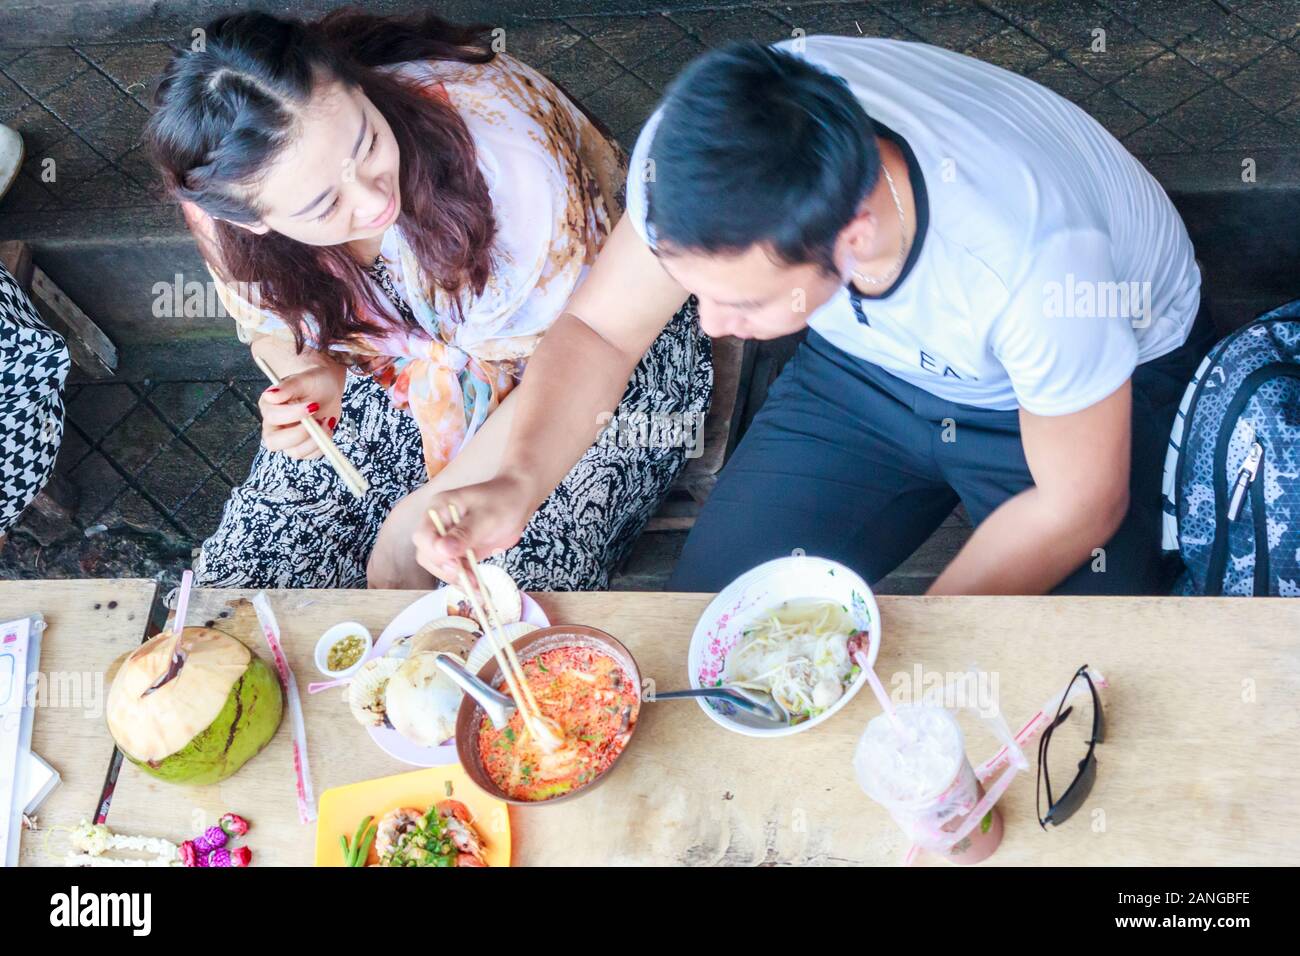 Amphawa, Thaïlande - 6 novembre 2015 ; Vue aérienne de touristes de manger au marché flottant. Le marché a lieu chaque semaine. Banque D'Images